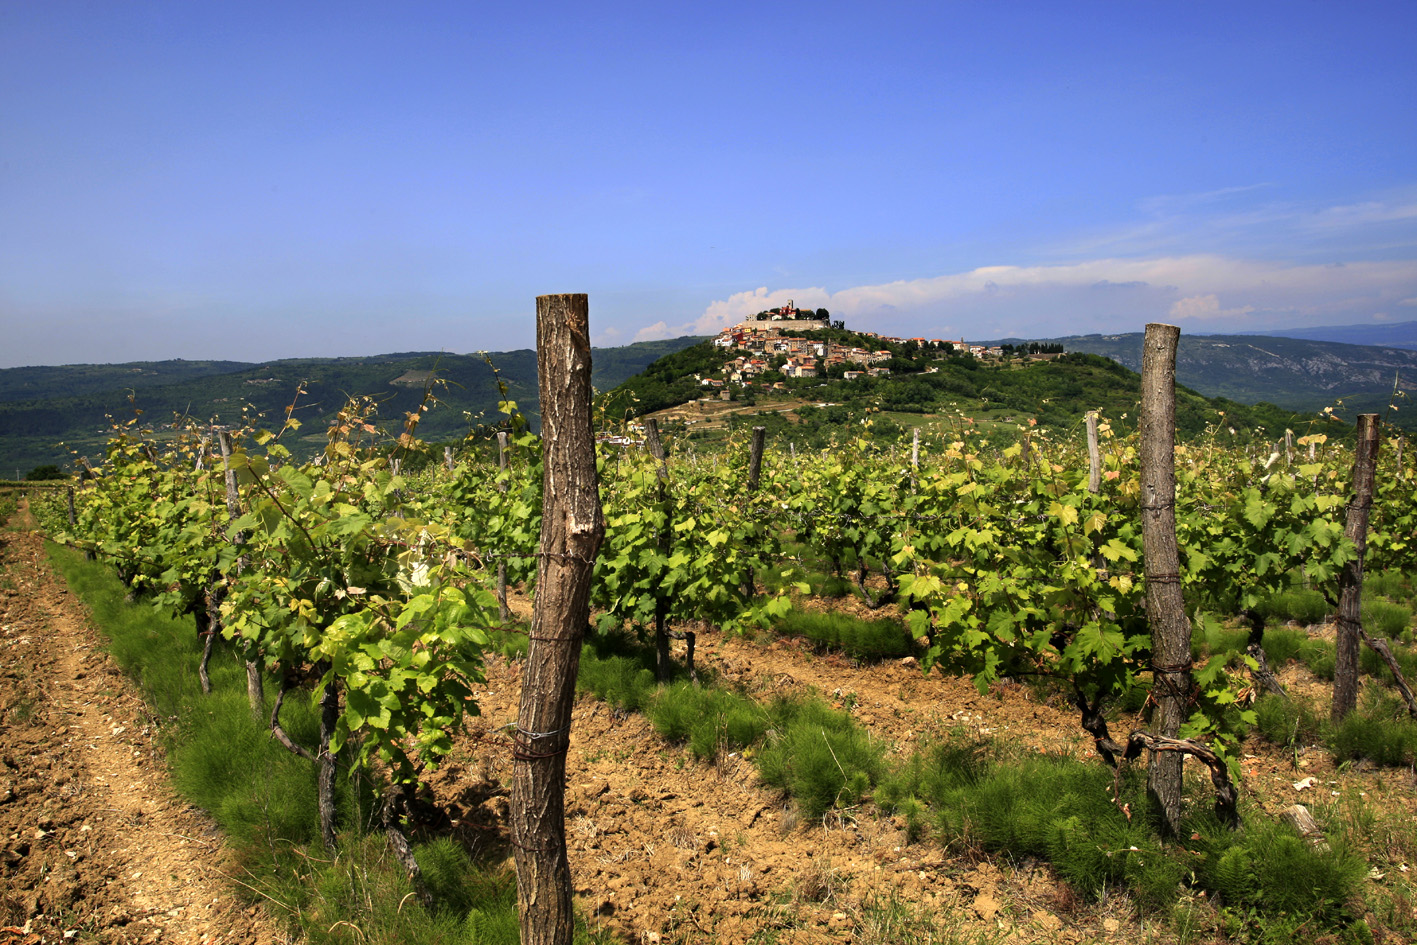  Scampagnata con i prodotti tipici: Istria wine & walk